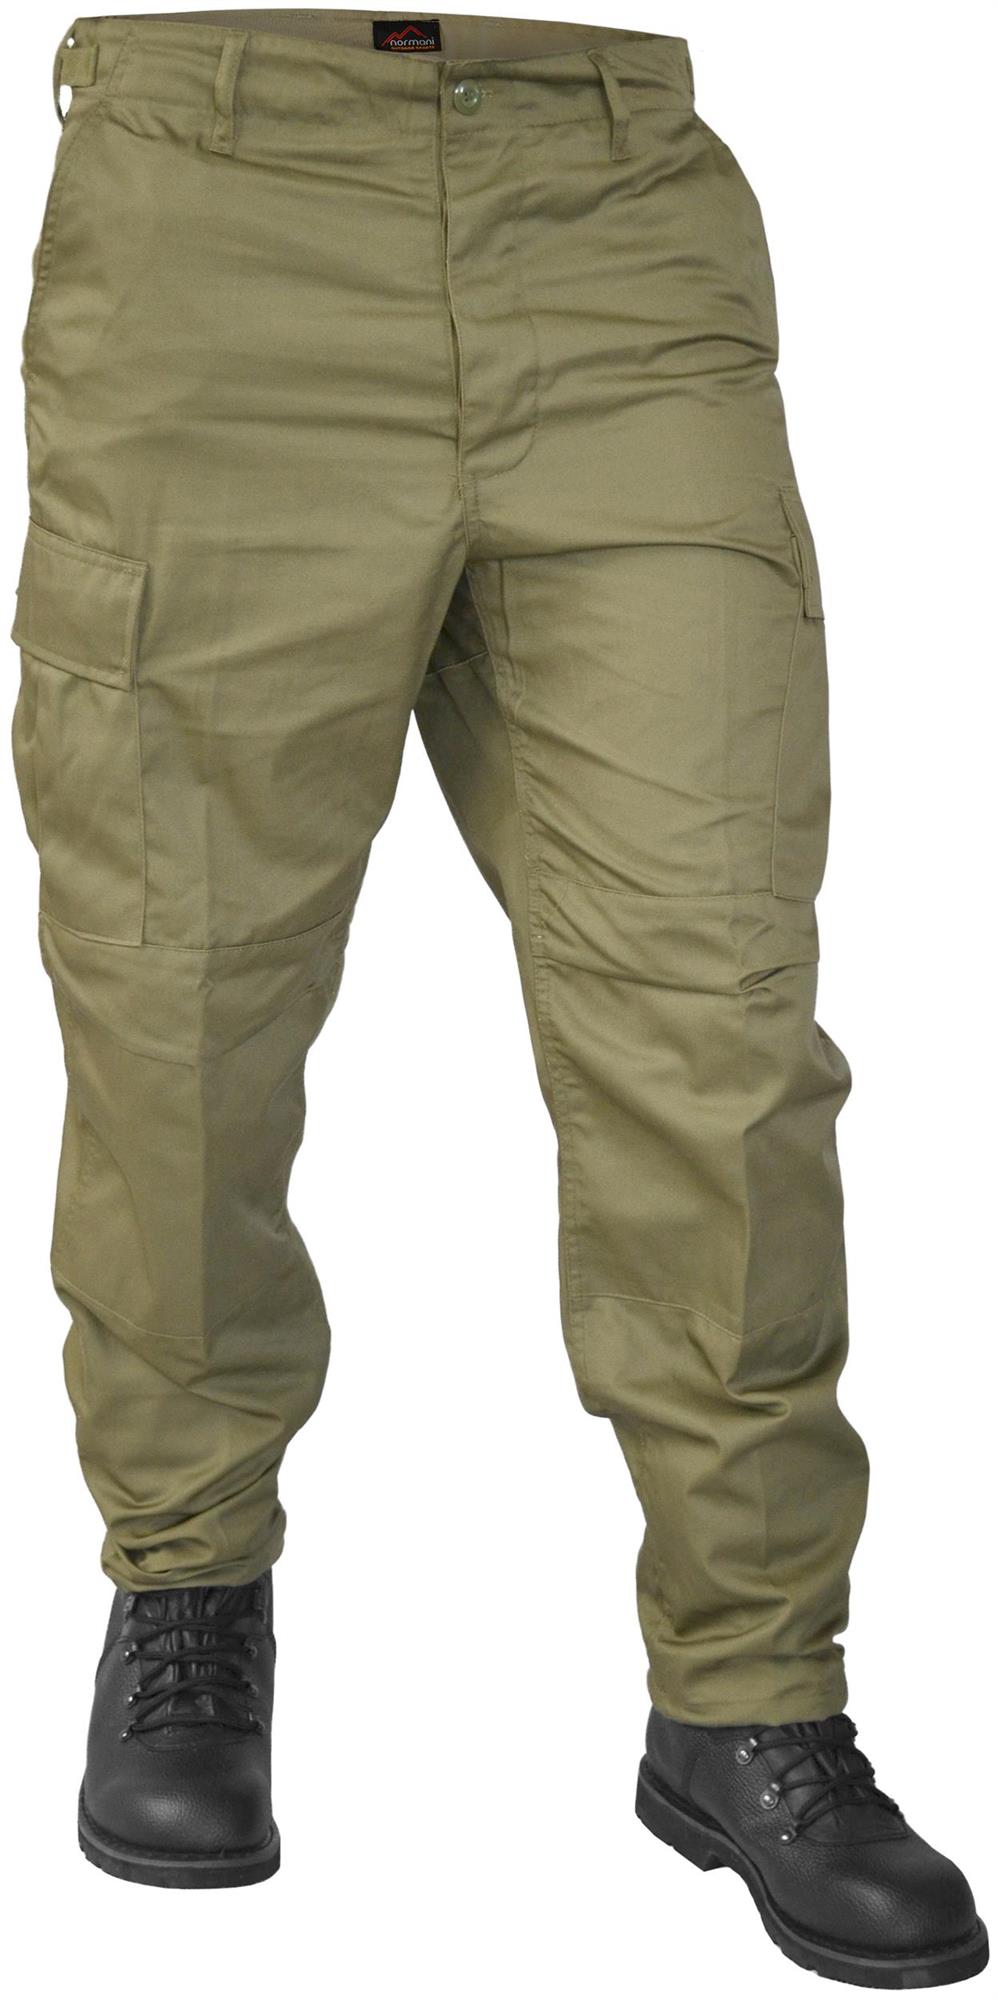 Ranger Hose Freizeithose Einsatzhose Herren Bekleidung mit 6 Taschen flecktarn 